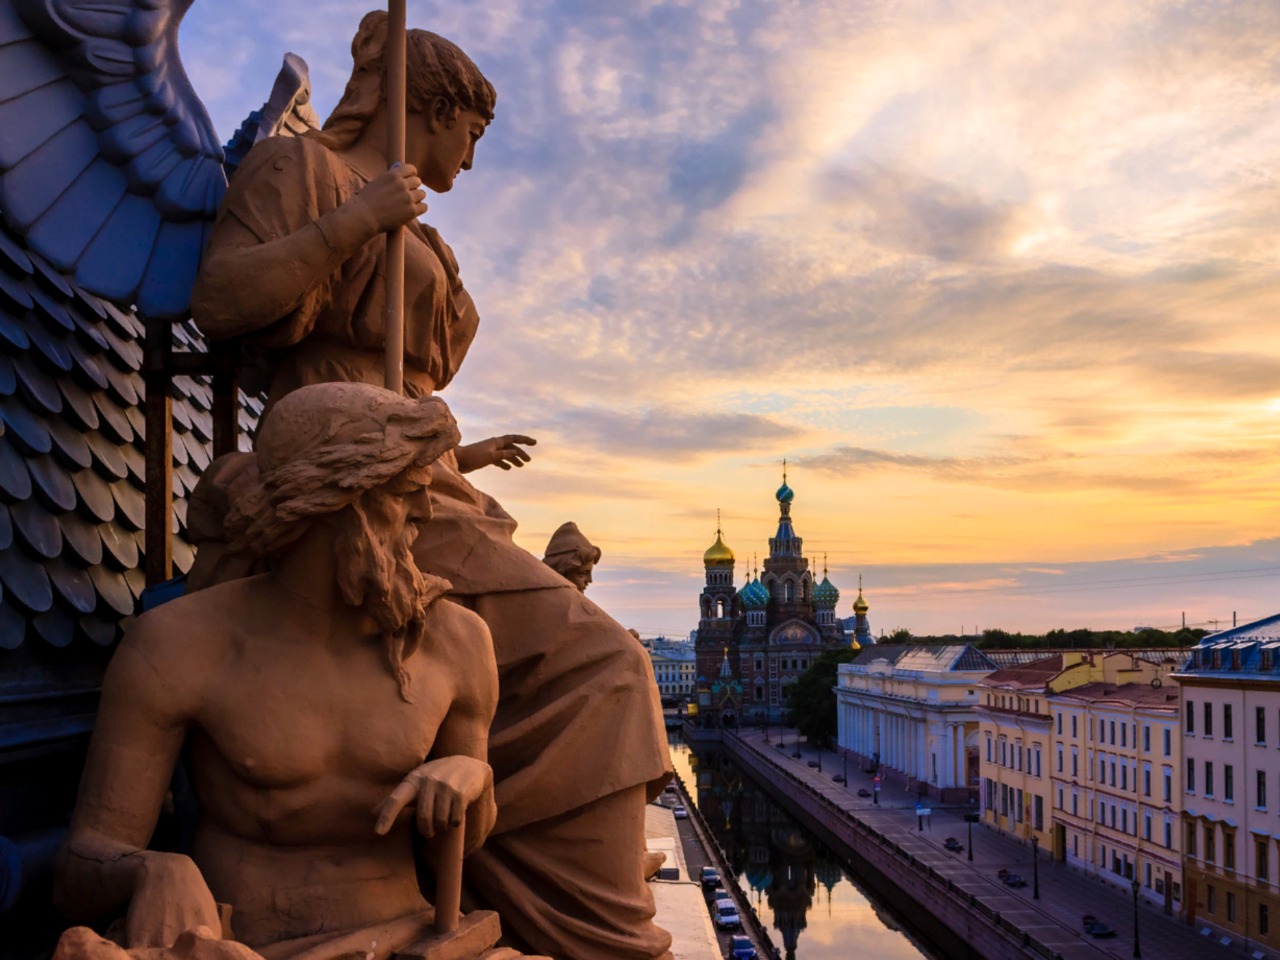 Санкт-Петербург: легенды и мифы Северной столицы | Цена 920₽, отзывы, описание экскурсии